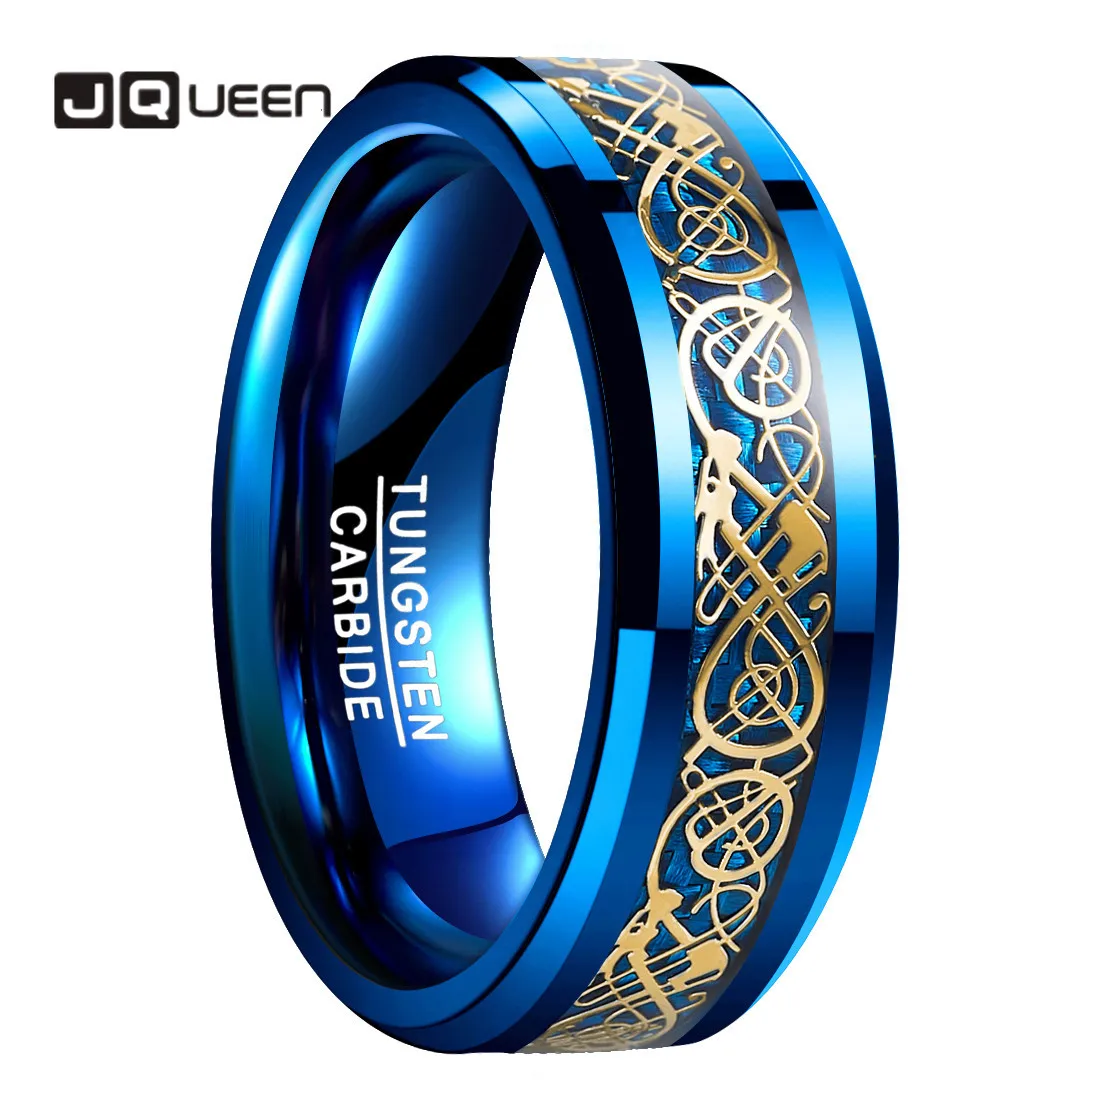 Jqueen 8mm masculino anel de carboneto de tungstênio celta dragão casamento anel banda azul/preto fibra de carbono anel de noivado tamanho 5-14